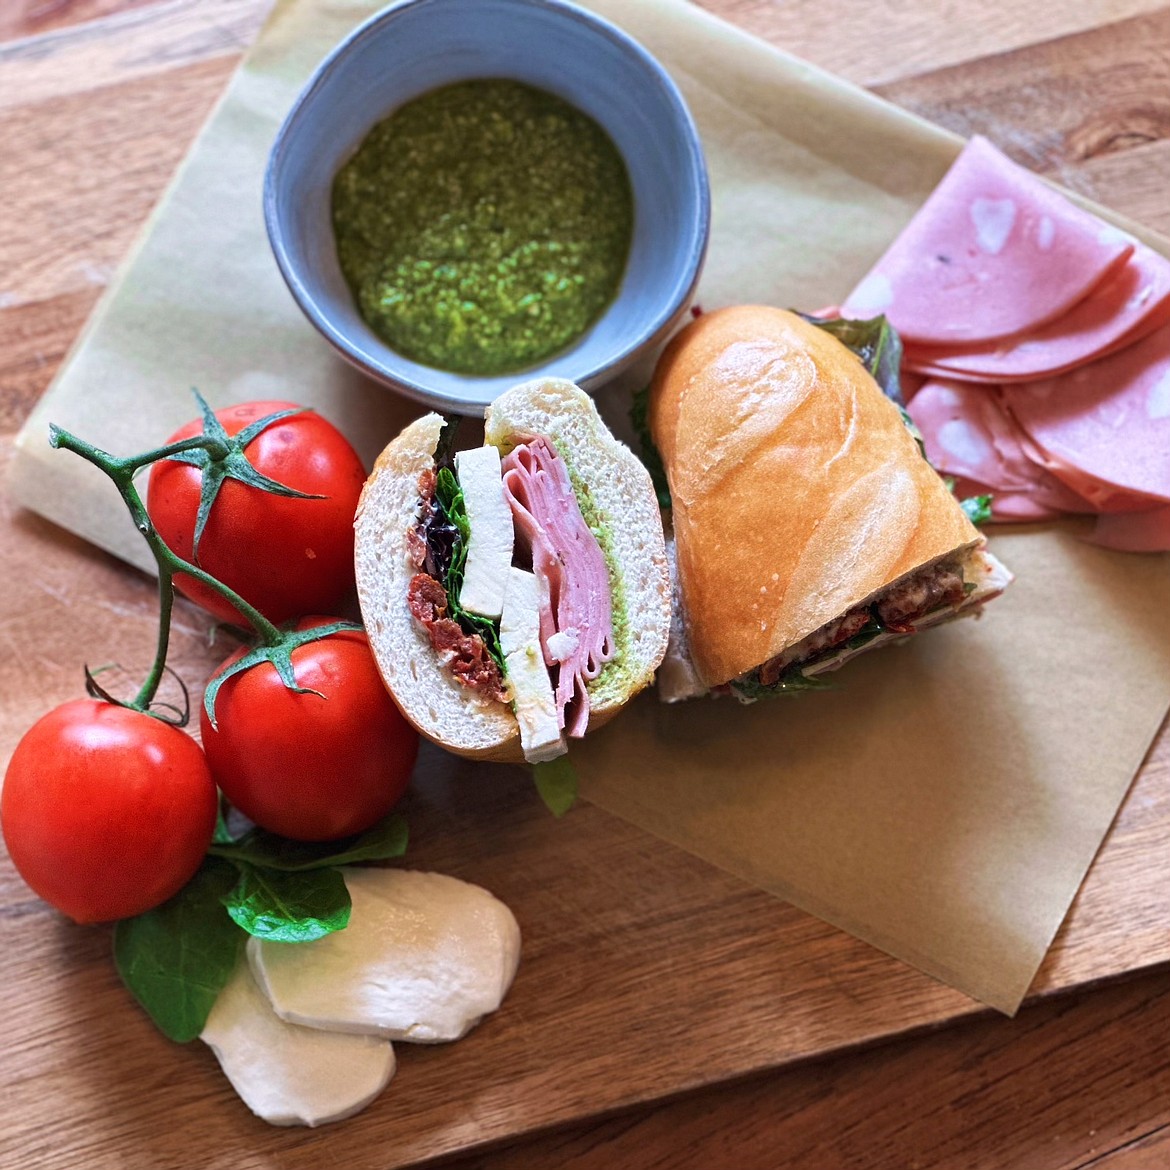 An Italian sandwich from The Farm Table in Kalispell (Brandi Peerman photo)